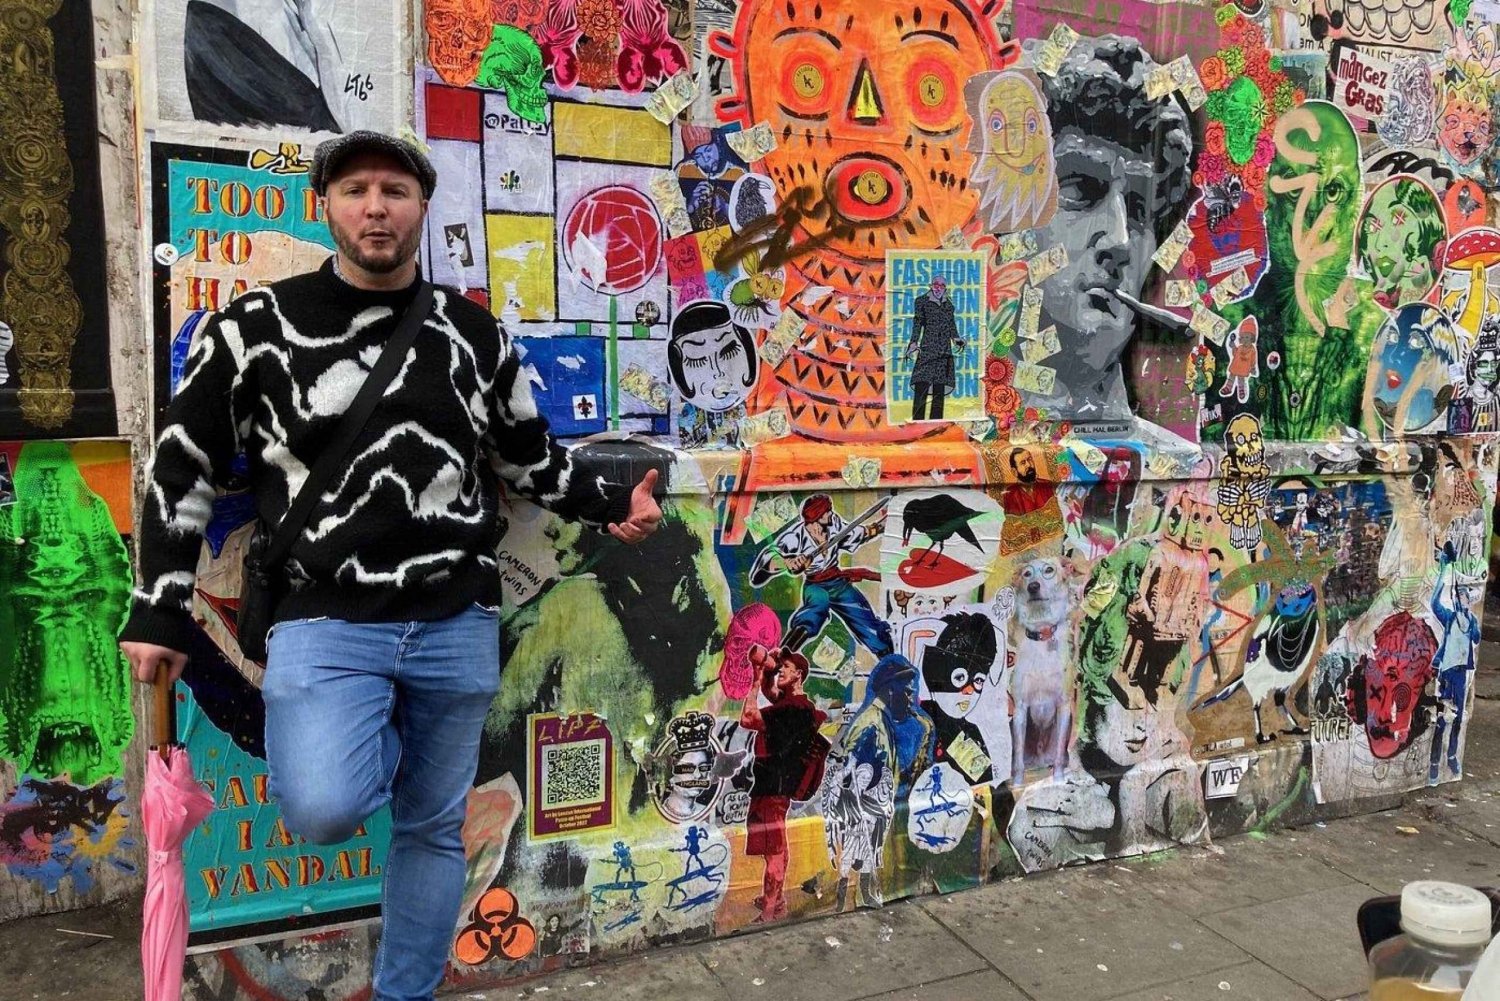 Visite Instagrammable de l'East End de Londres avec Street Art et Graffiti